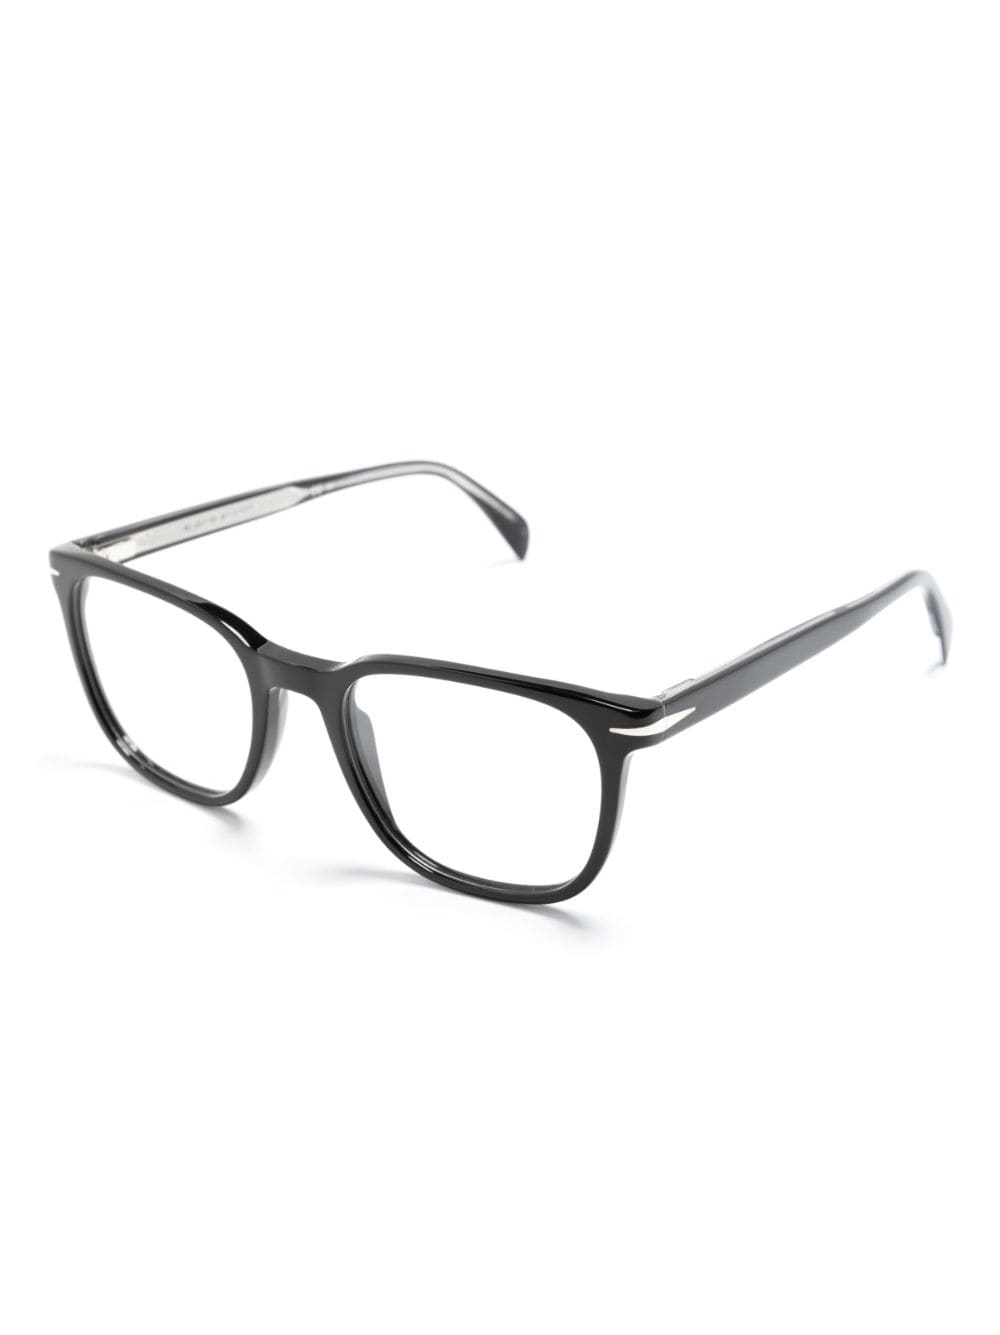 Eyewear by David Beckham DB 1107 bril met vierkant montuur - Zwart